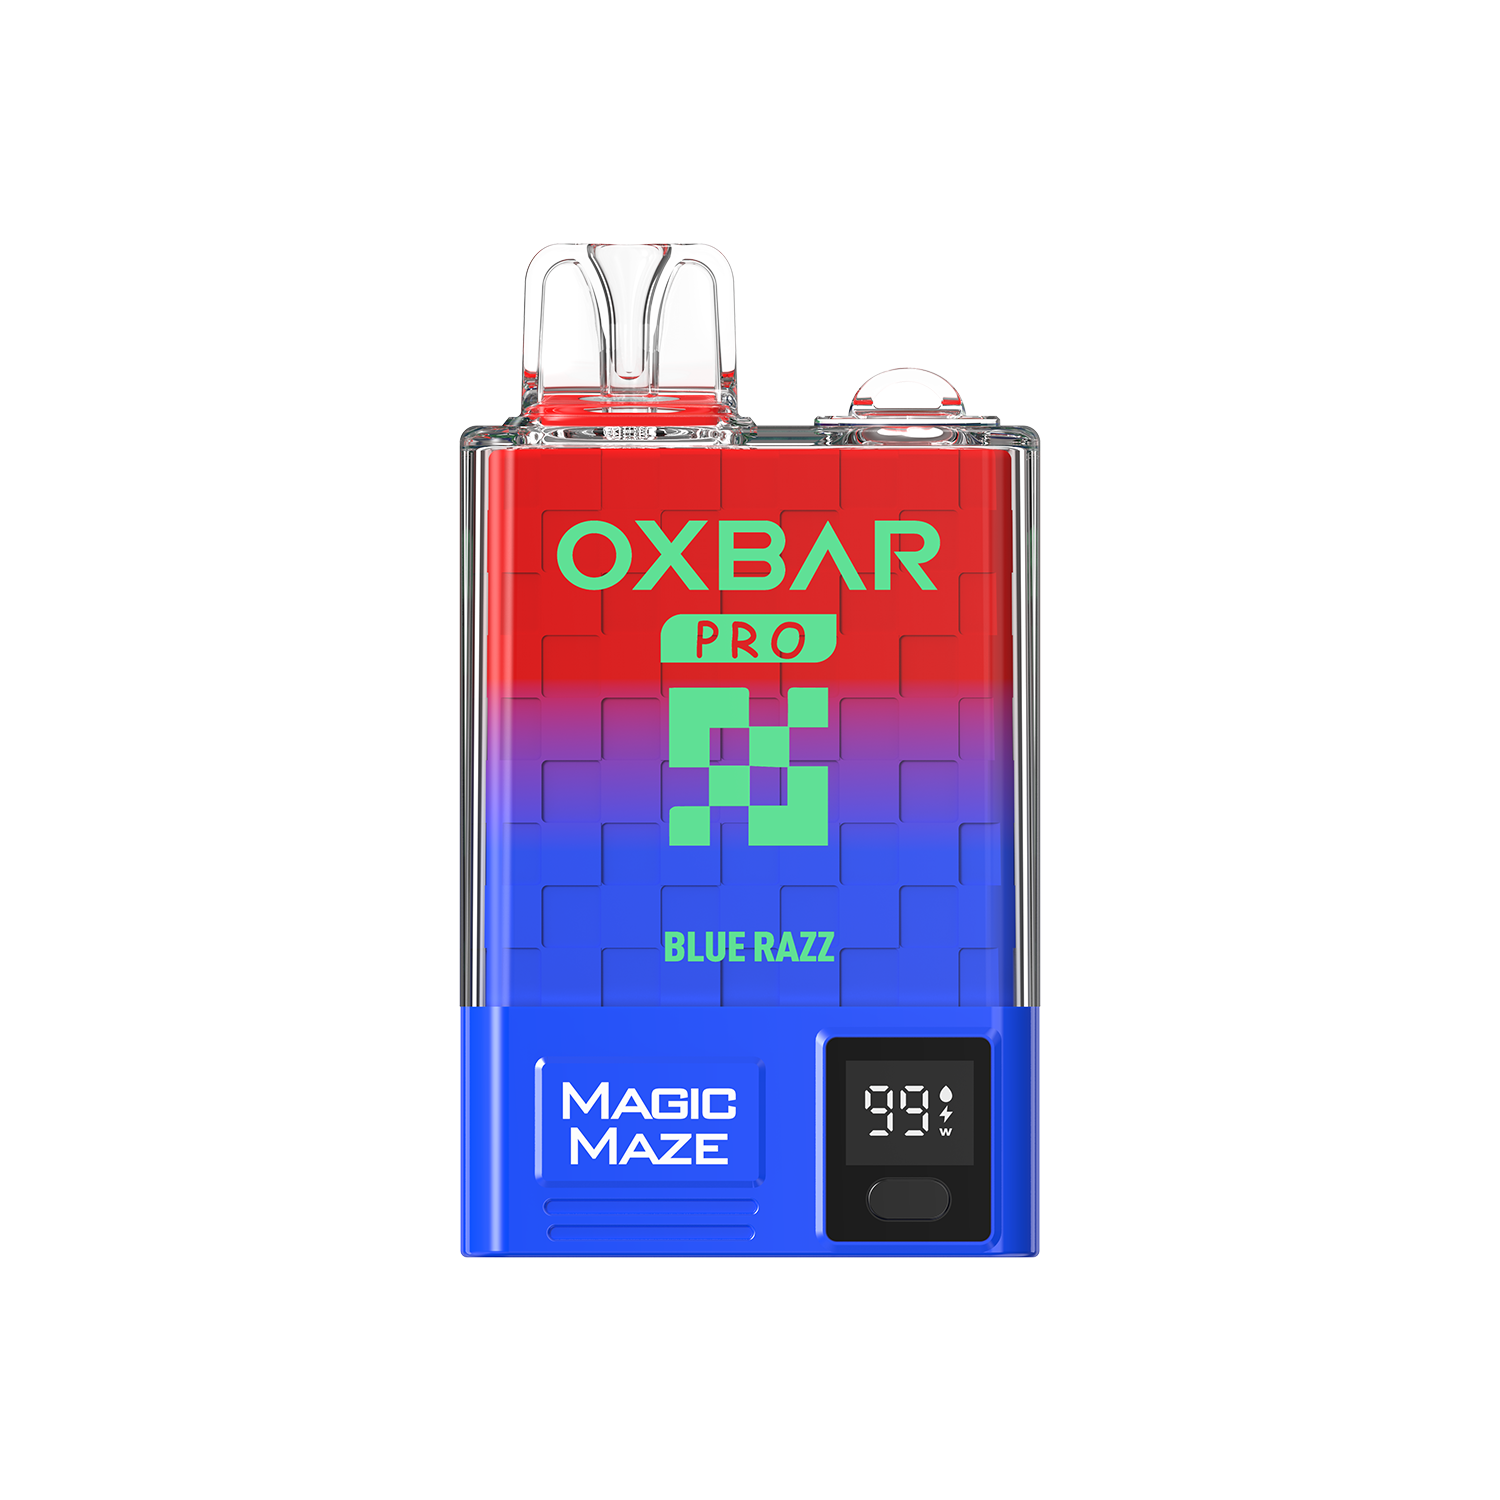 Oxbar Blue Razz